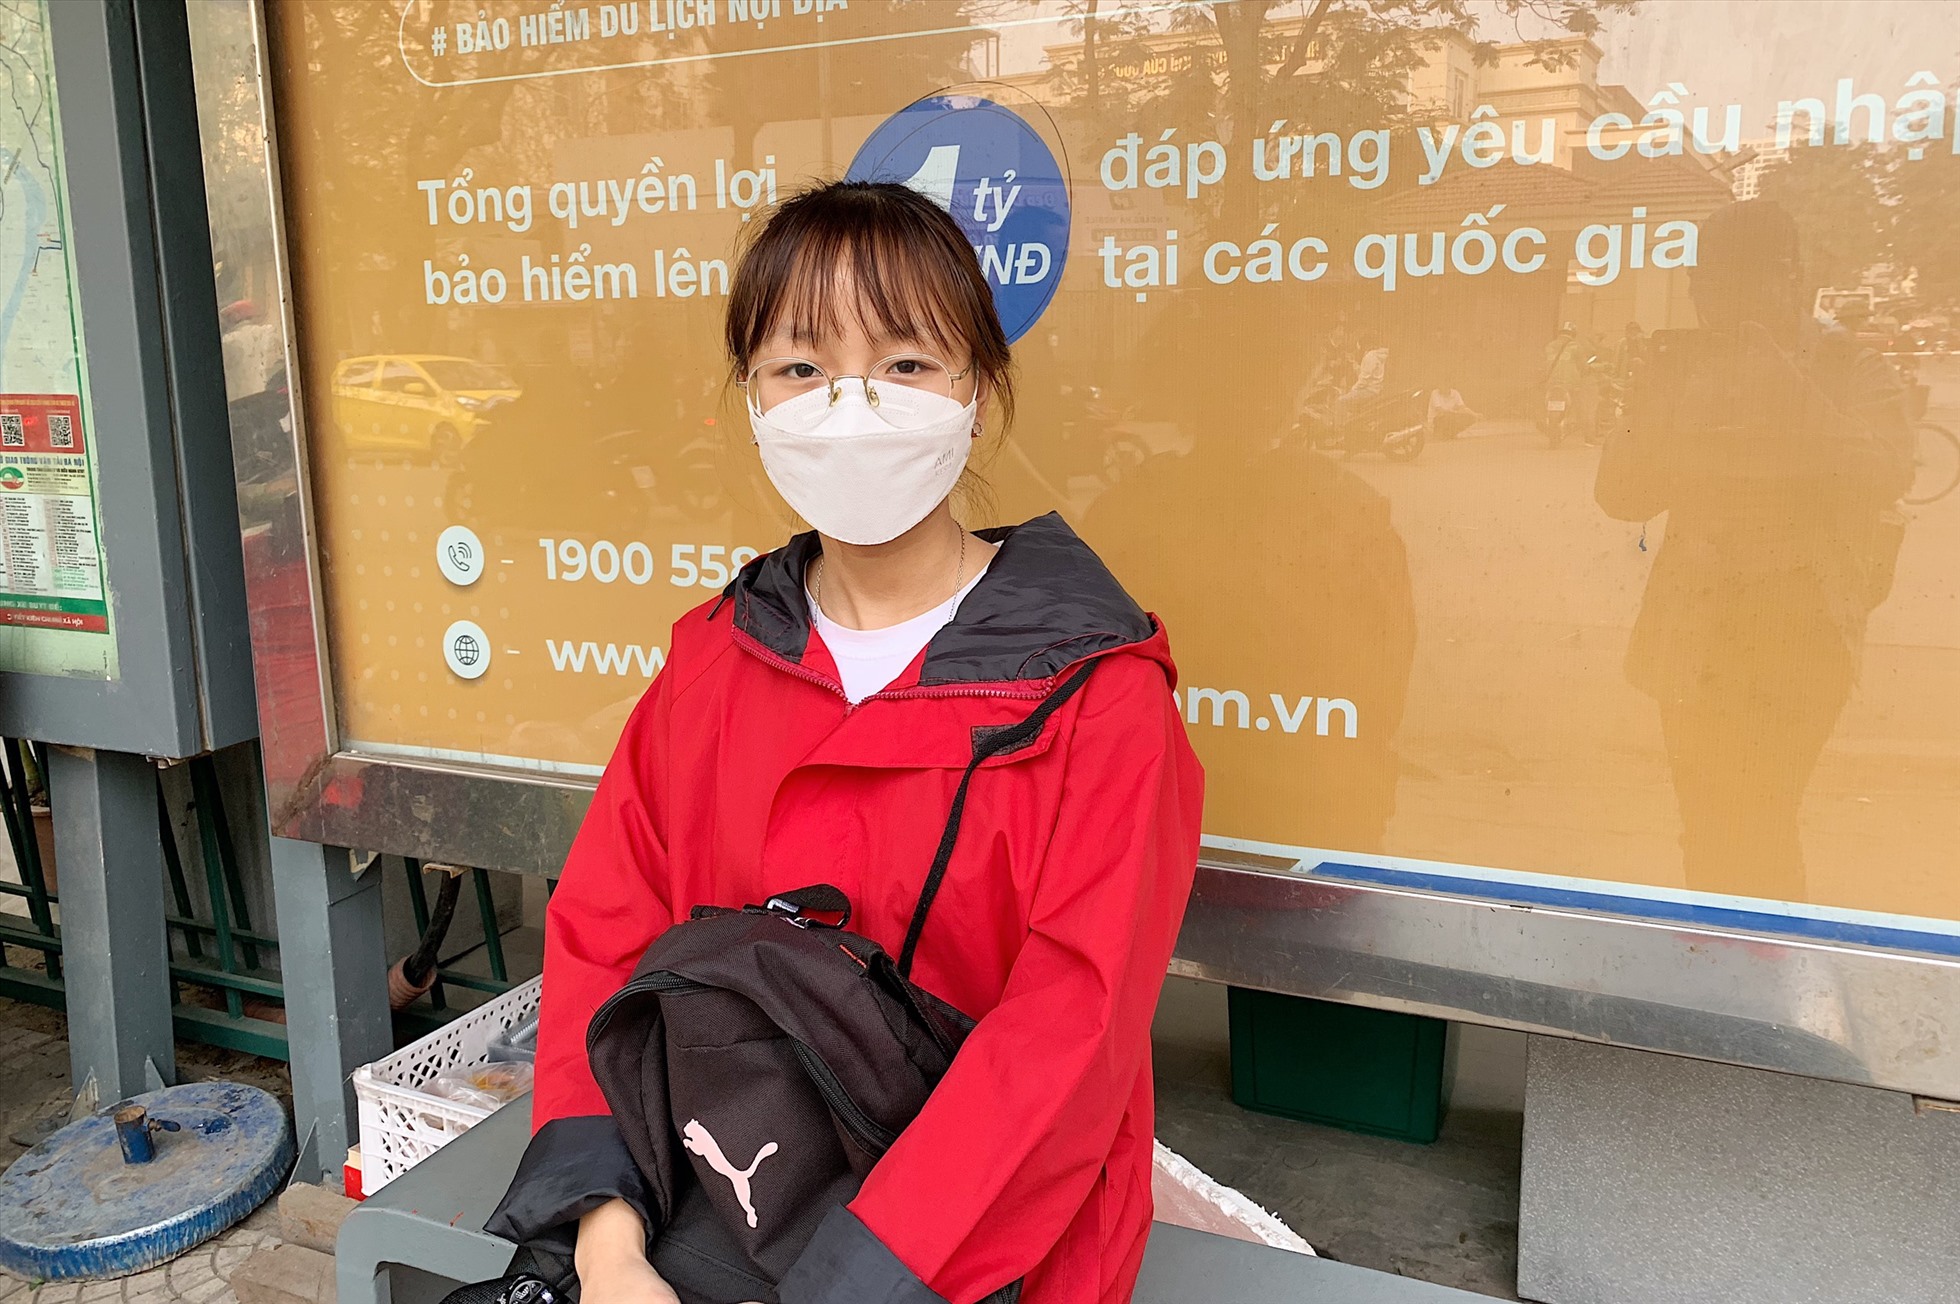 Chị Bùi Thị Trang chia sẻ nhiều lần phải đứng ra mép đường để chờ buýt do bị một số người dân chiếm điểm chờ thành nơi buôn bán. Ảnh: Thu Hiền